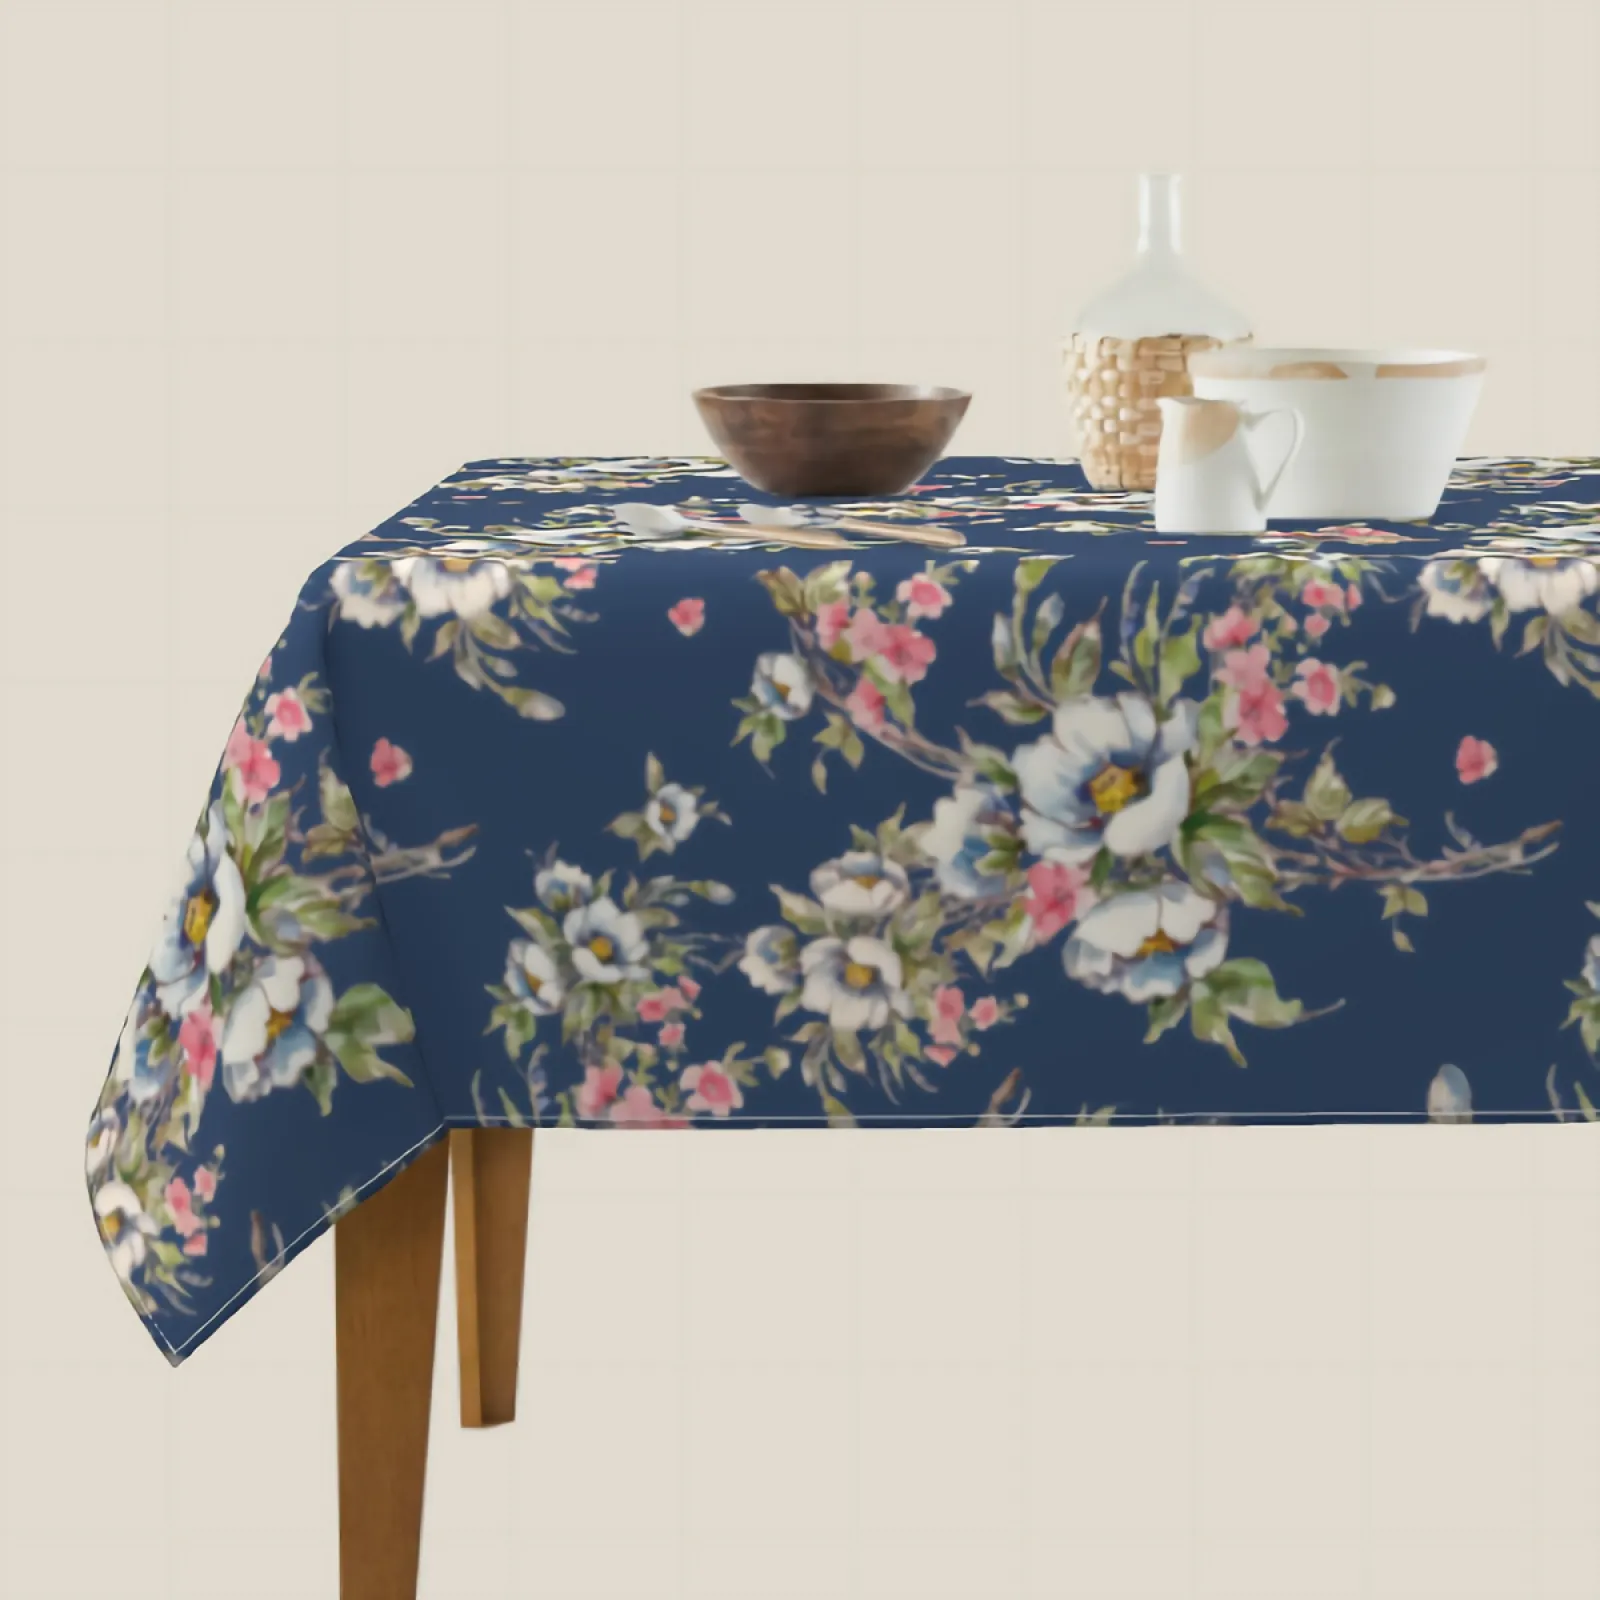 Couche de fleurs blanches table de table bleu floral